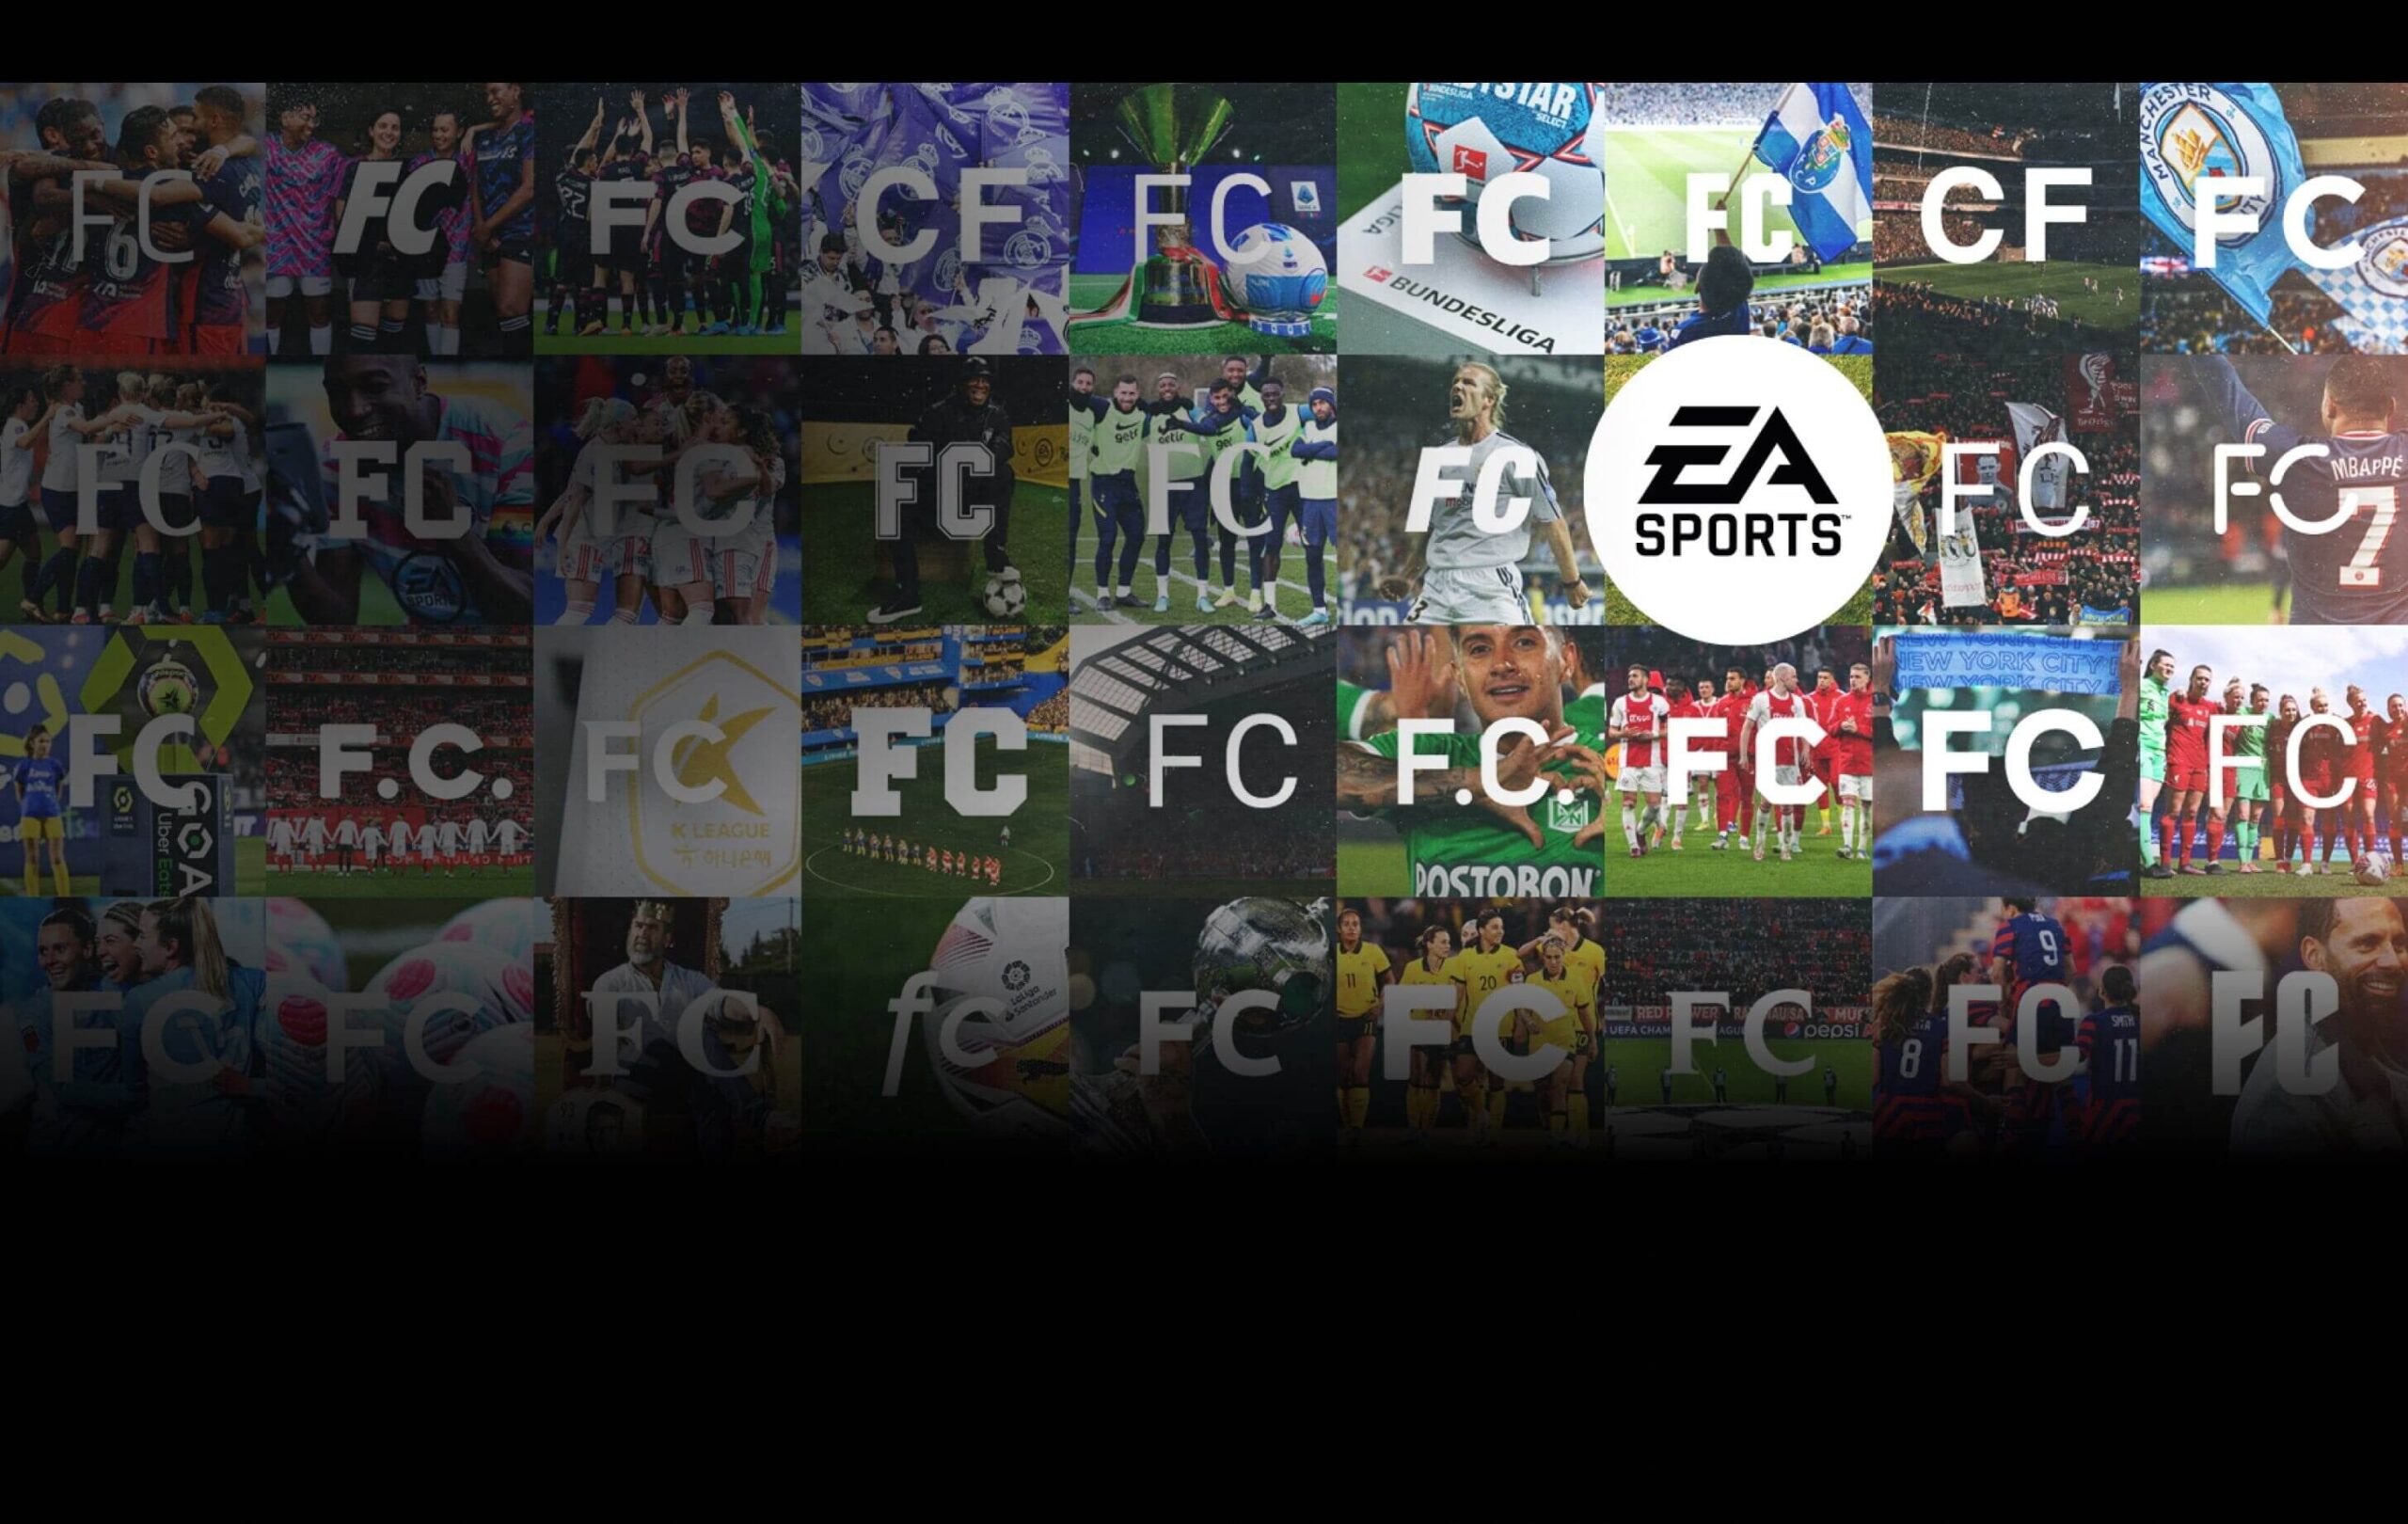 Официально: FIFA 23 станет последней FIFA от EA - новые игры получат бренд EA SPORTS FC